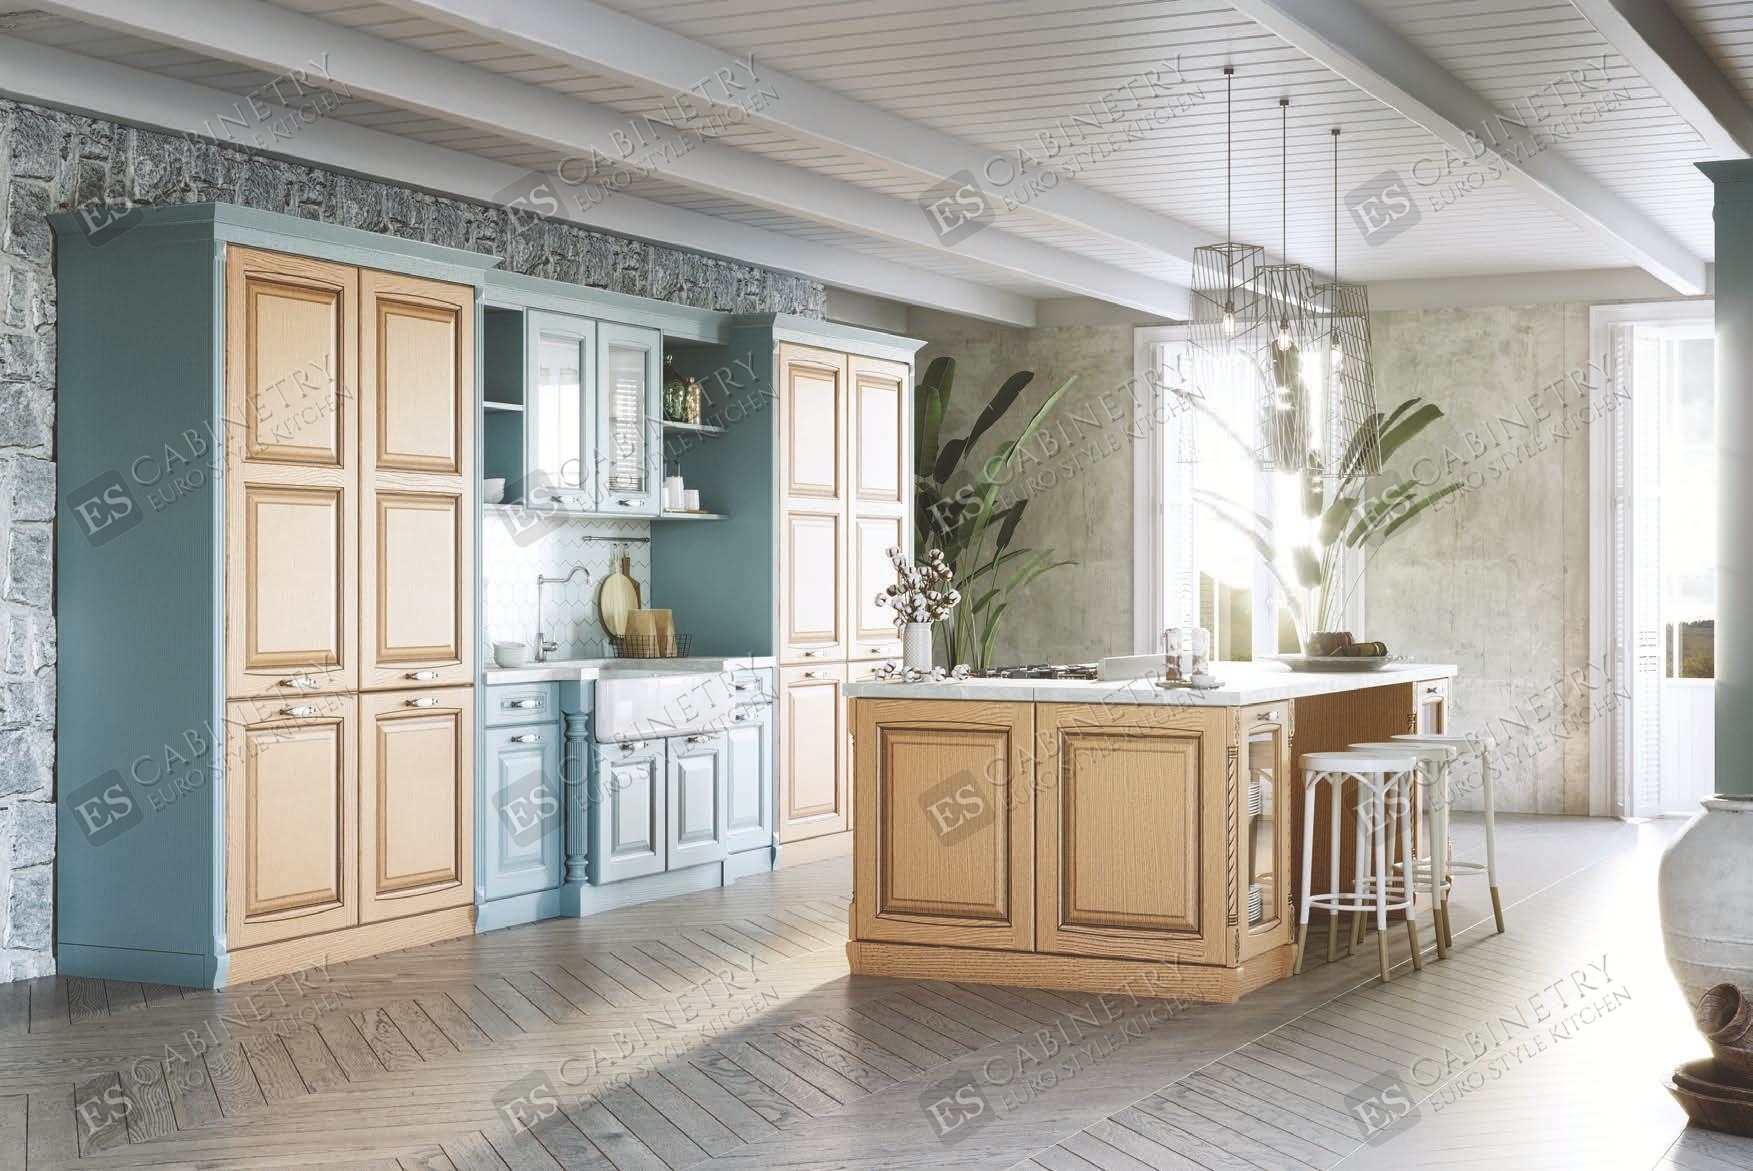 Bellagio kitchen cabinets